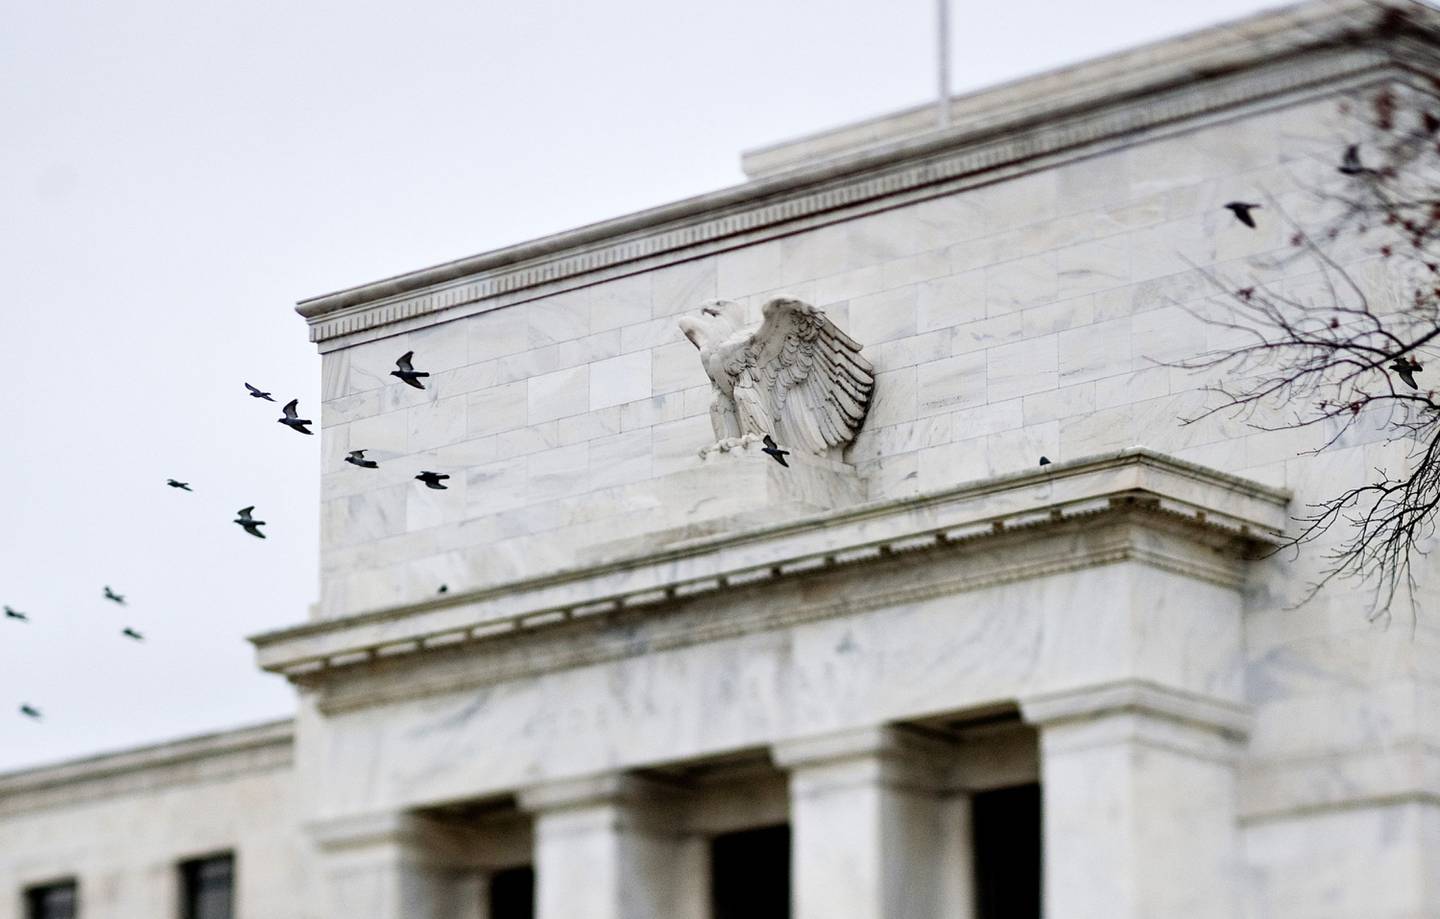 Pájaros pasan volando por delante del edificio de la Junta de la Reserva Federal Marriner S. Eccles en Washington, D.C., EE.UU. Fotógrafo: Joshua Roberts/Bloomberg